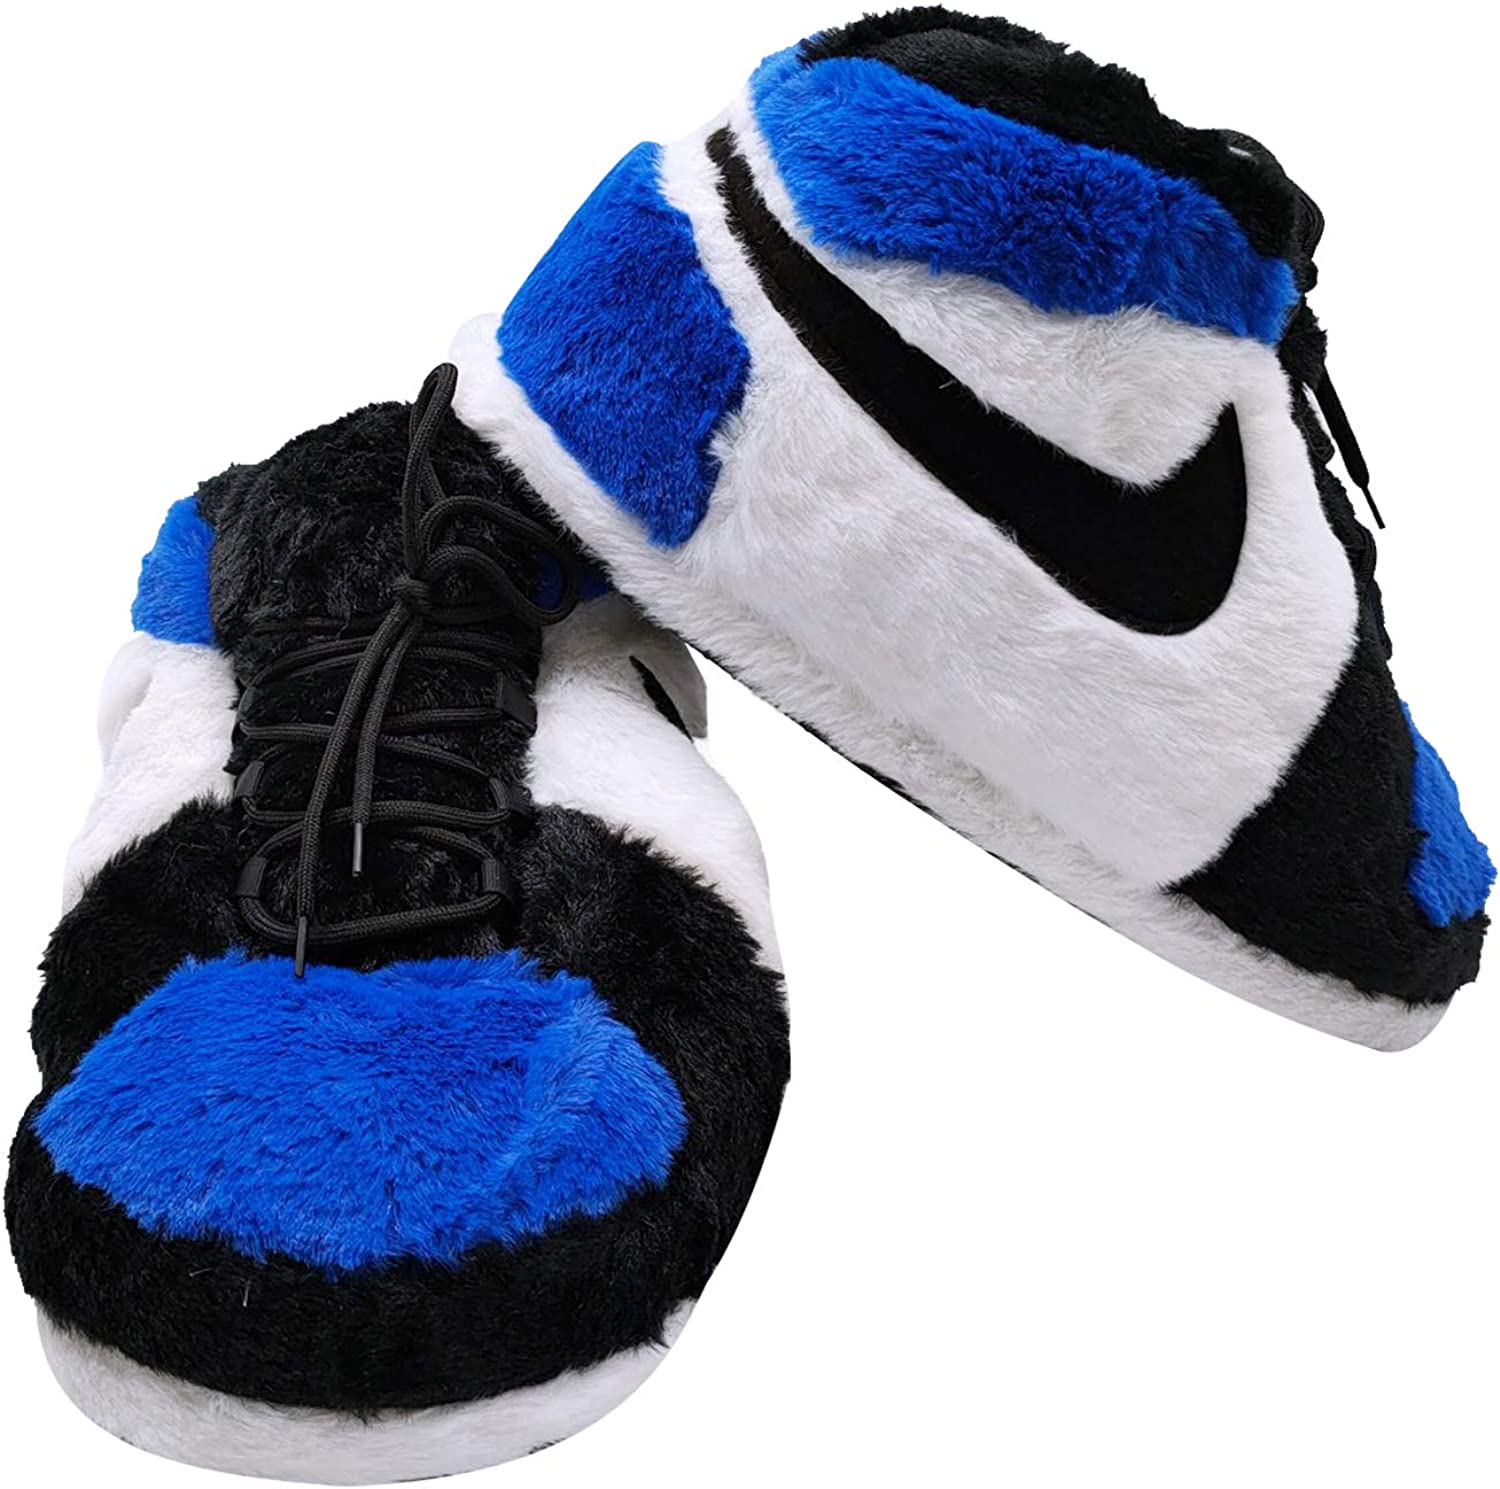 HomeBound Essentials Royal Blue / 6 (28-31 cm in length) Jordan Air Retro Sneaker Slipper Dunks